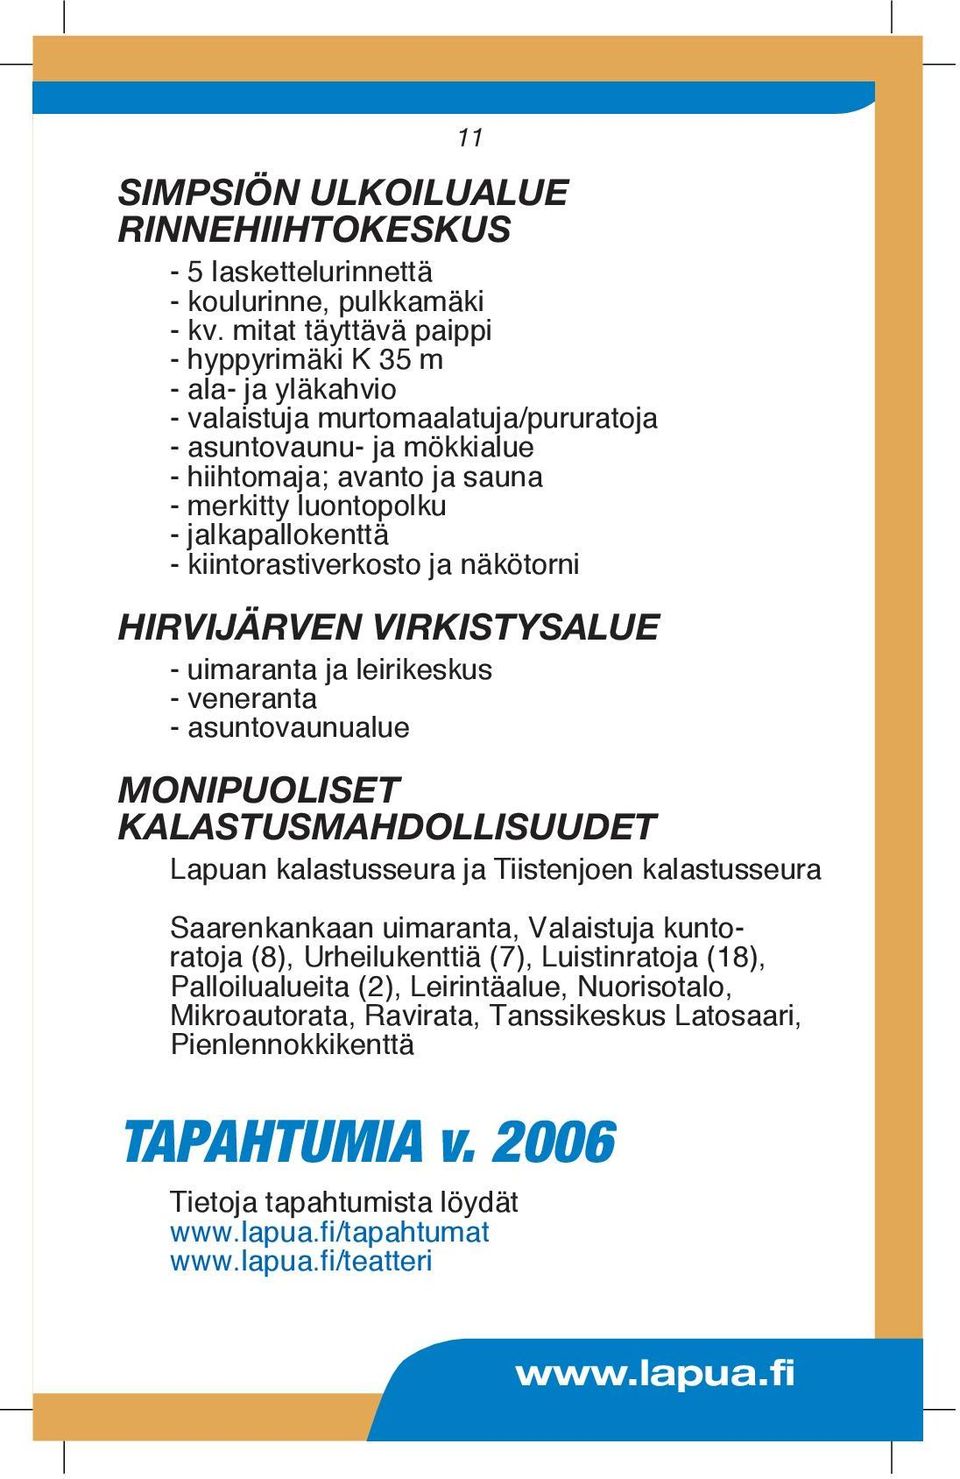 jalkapallokenttä - kiintorastiverkosto ja näkötorni HIRVIJÄRVEN VIRKISTYSALUE - uimaranta ja leirikeskus - veneranta - asuntovaunualue MONIPUOLISET KALASTUSMAHDOLLISUUDET Lapuan kalastusseura ja